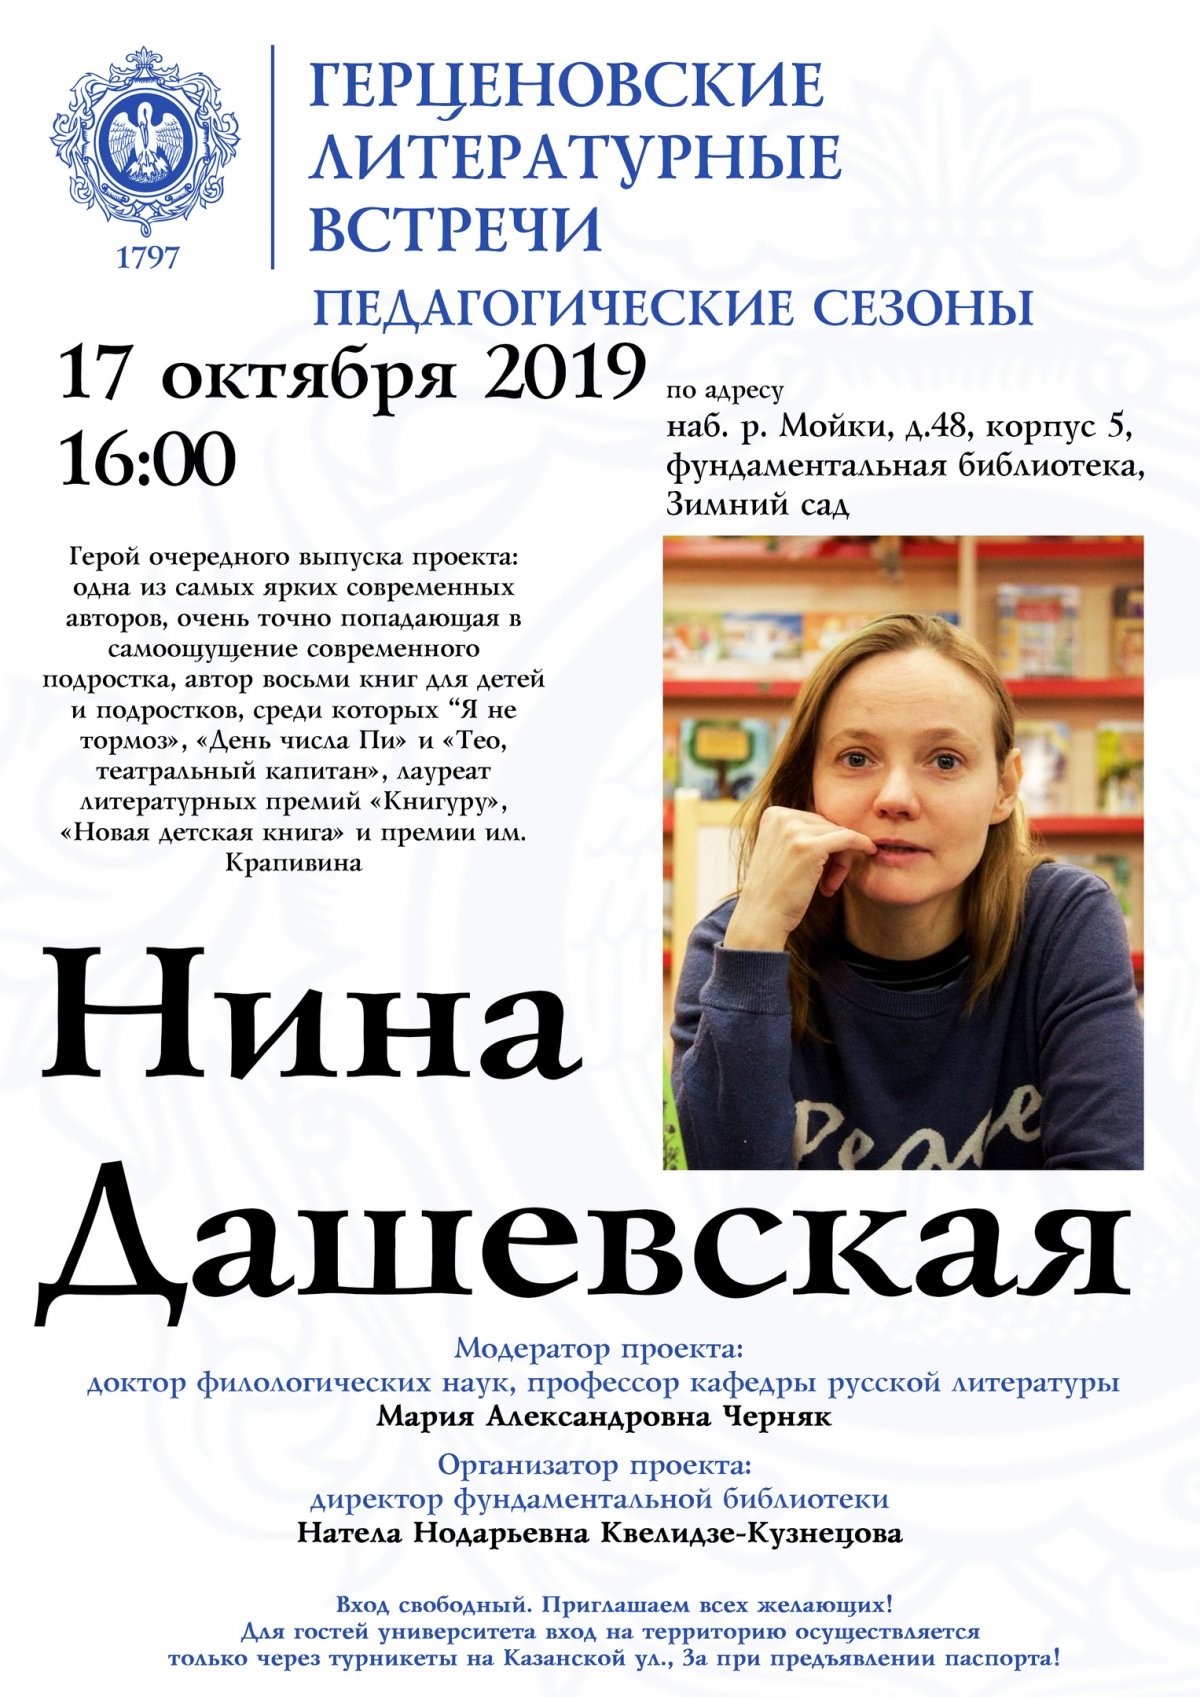 17 октября в 16:00 в рамках проекиа состоится очередной выпуск проекта "Герценовские литературные встречи"